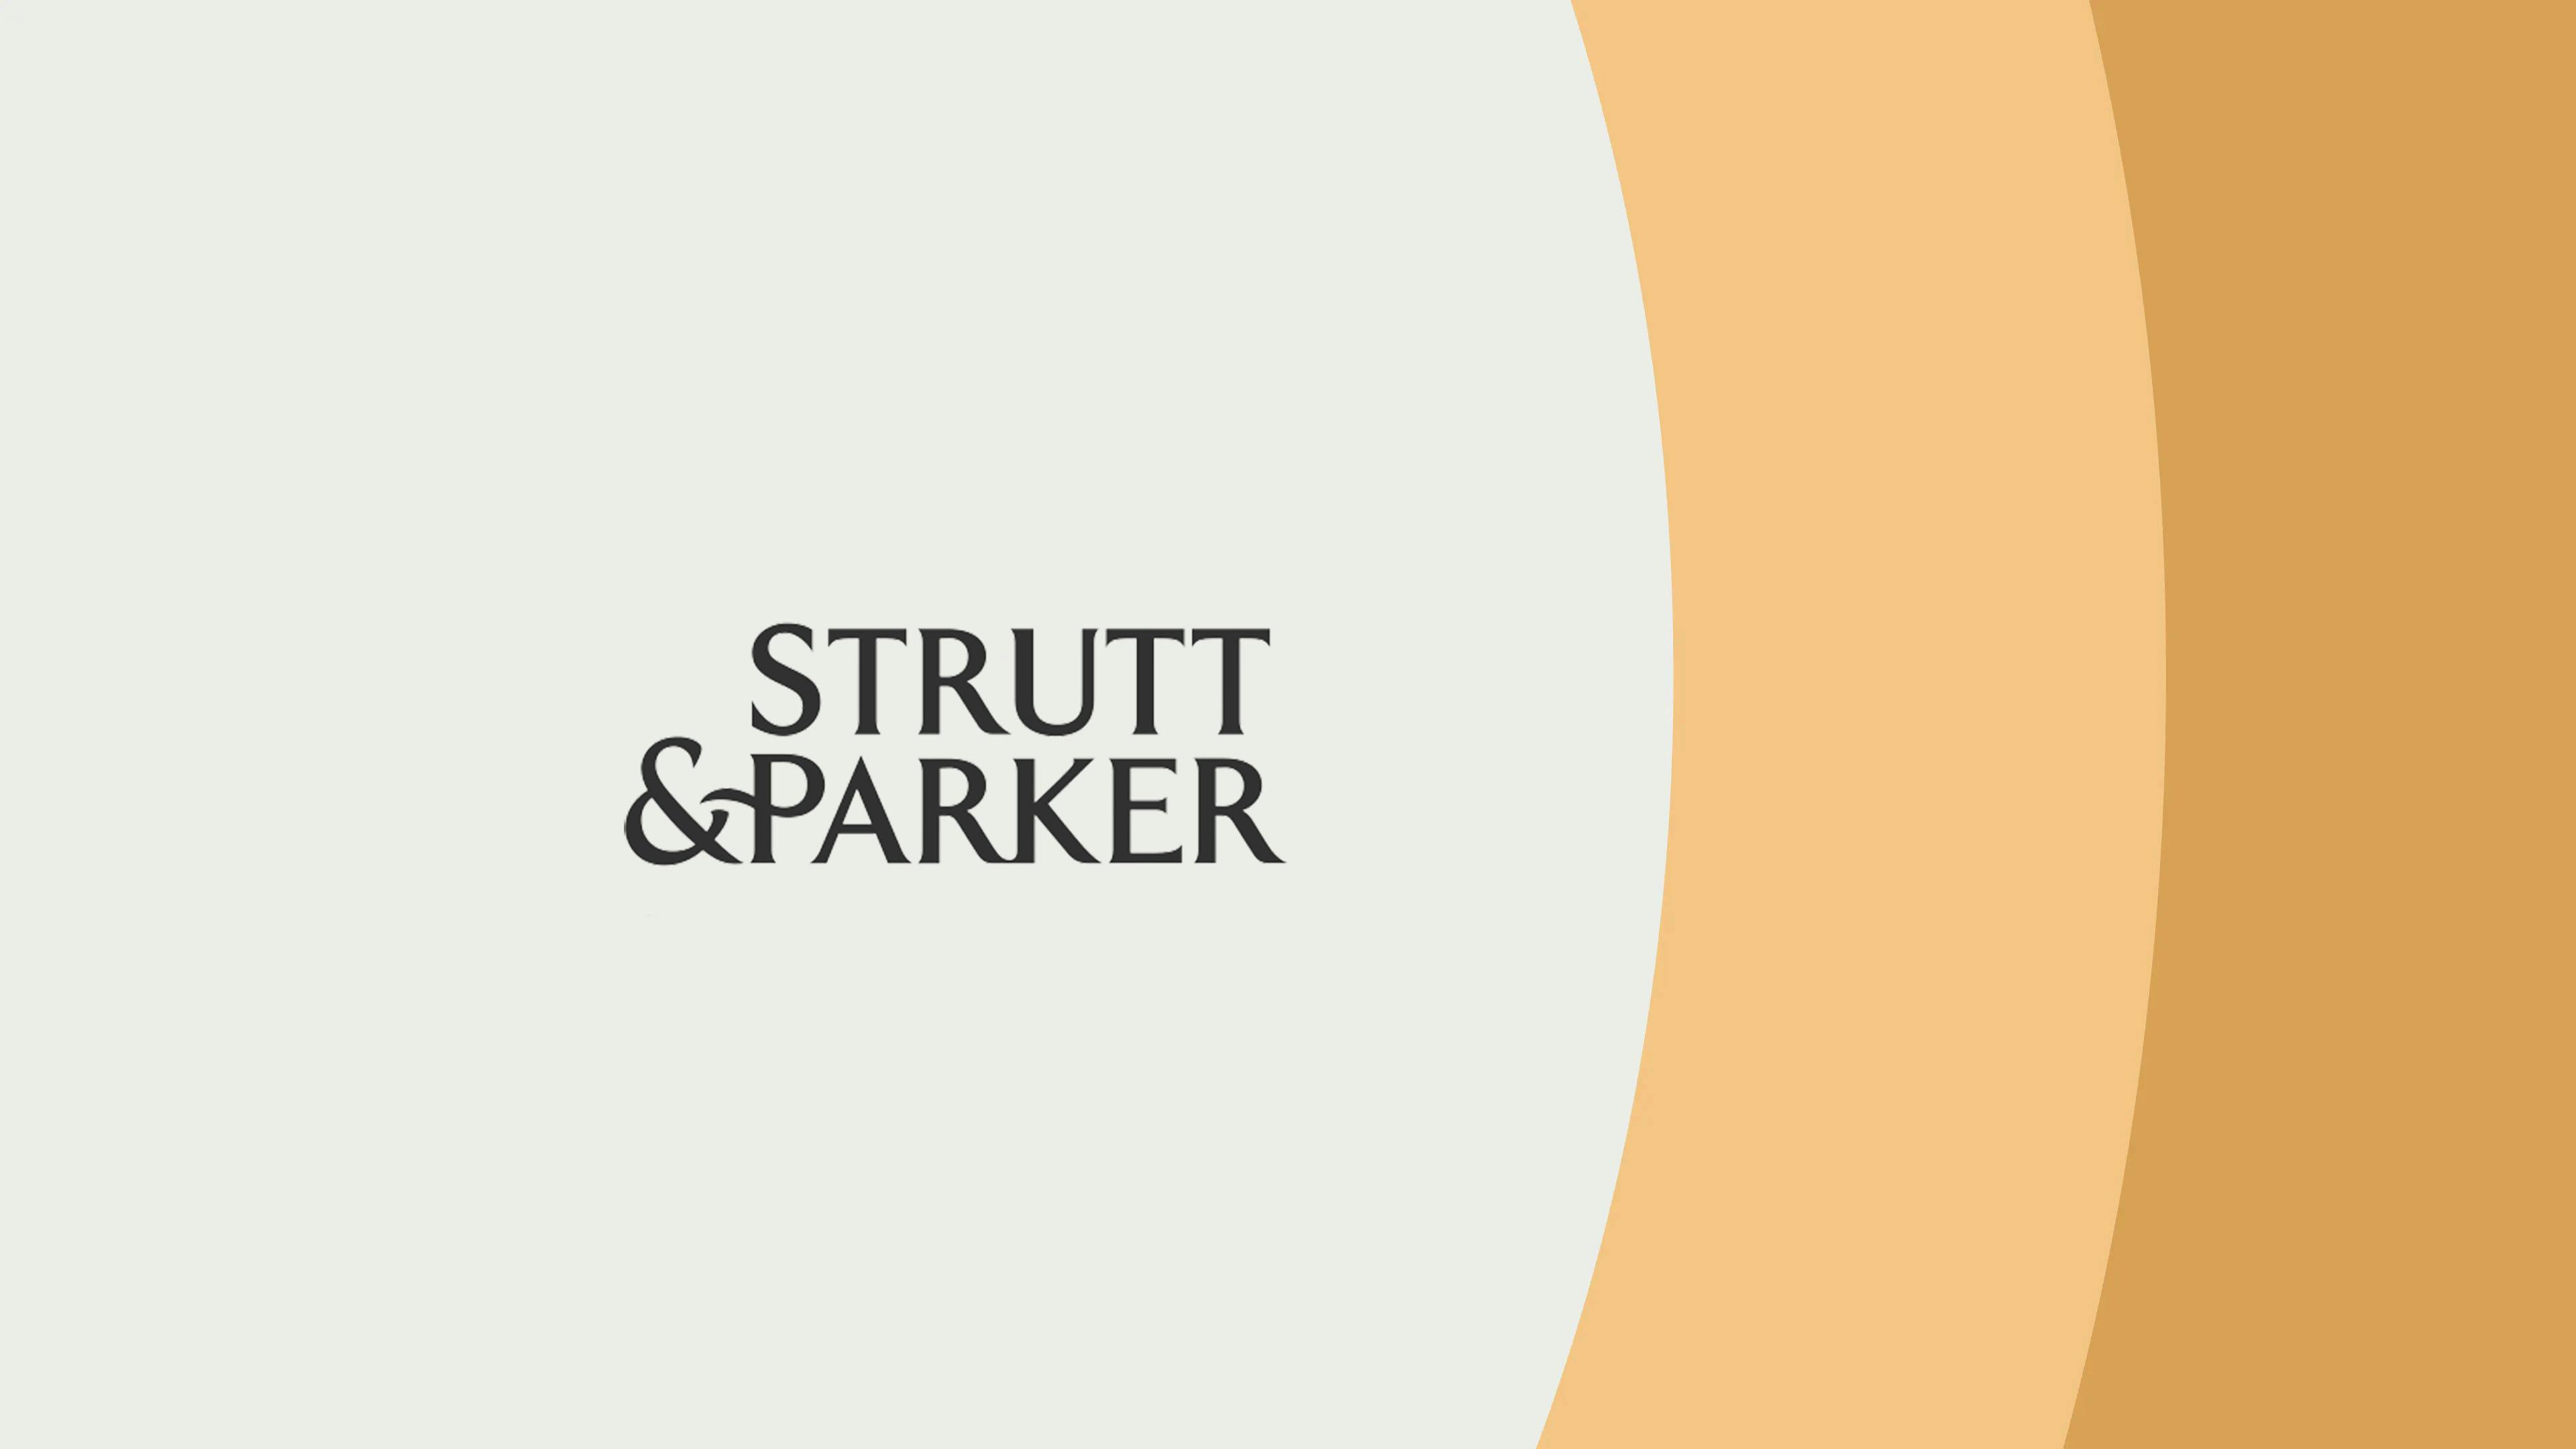 Strutt & Parker logo on a grey background